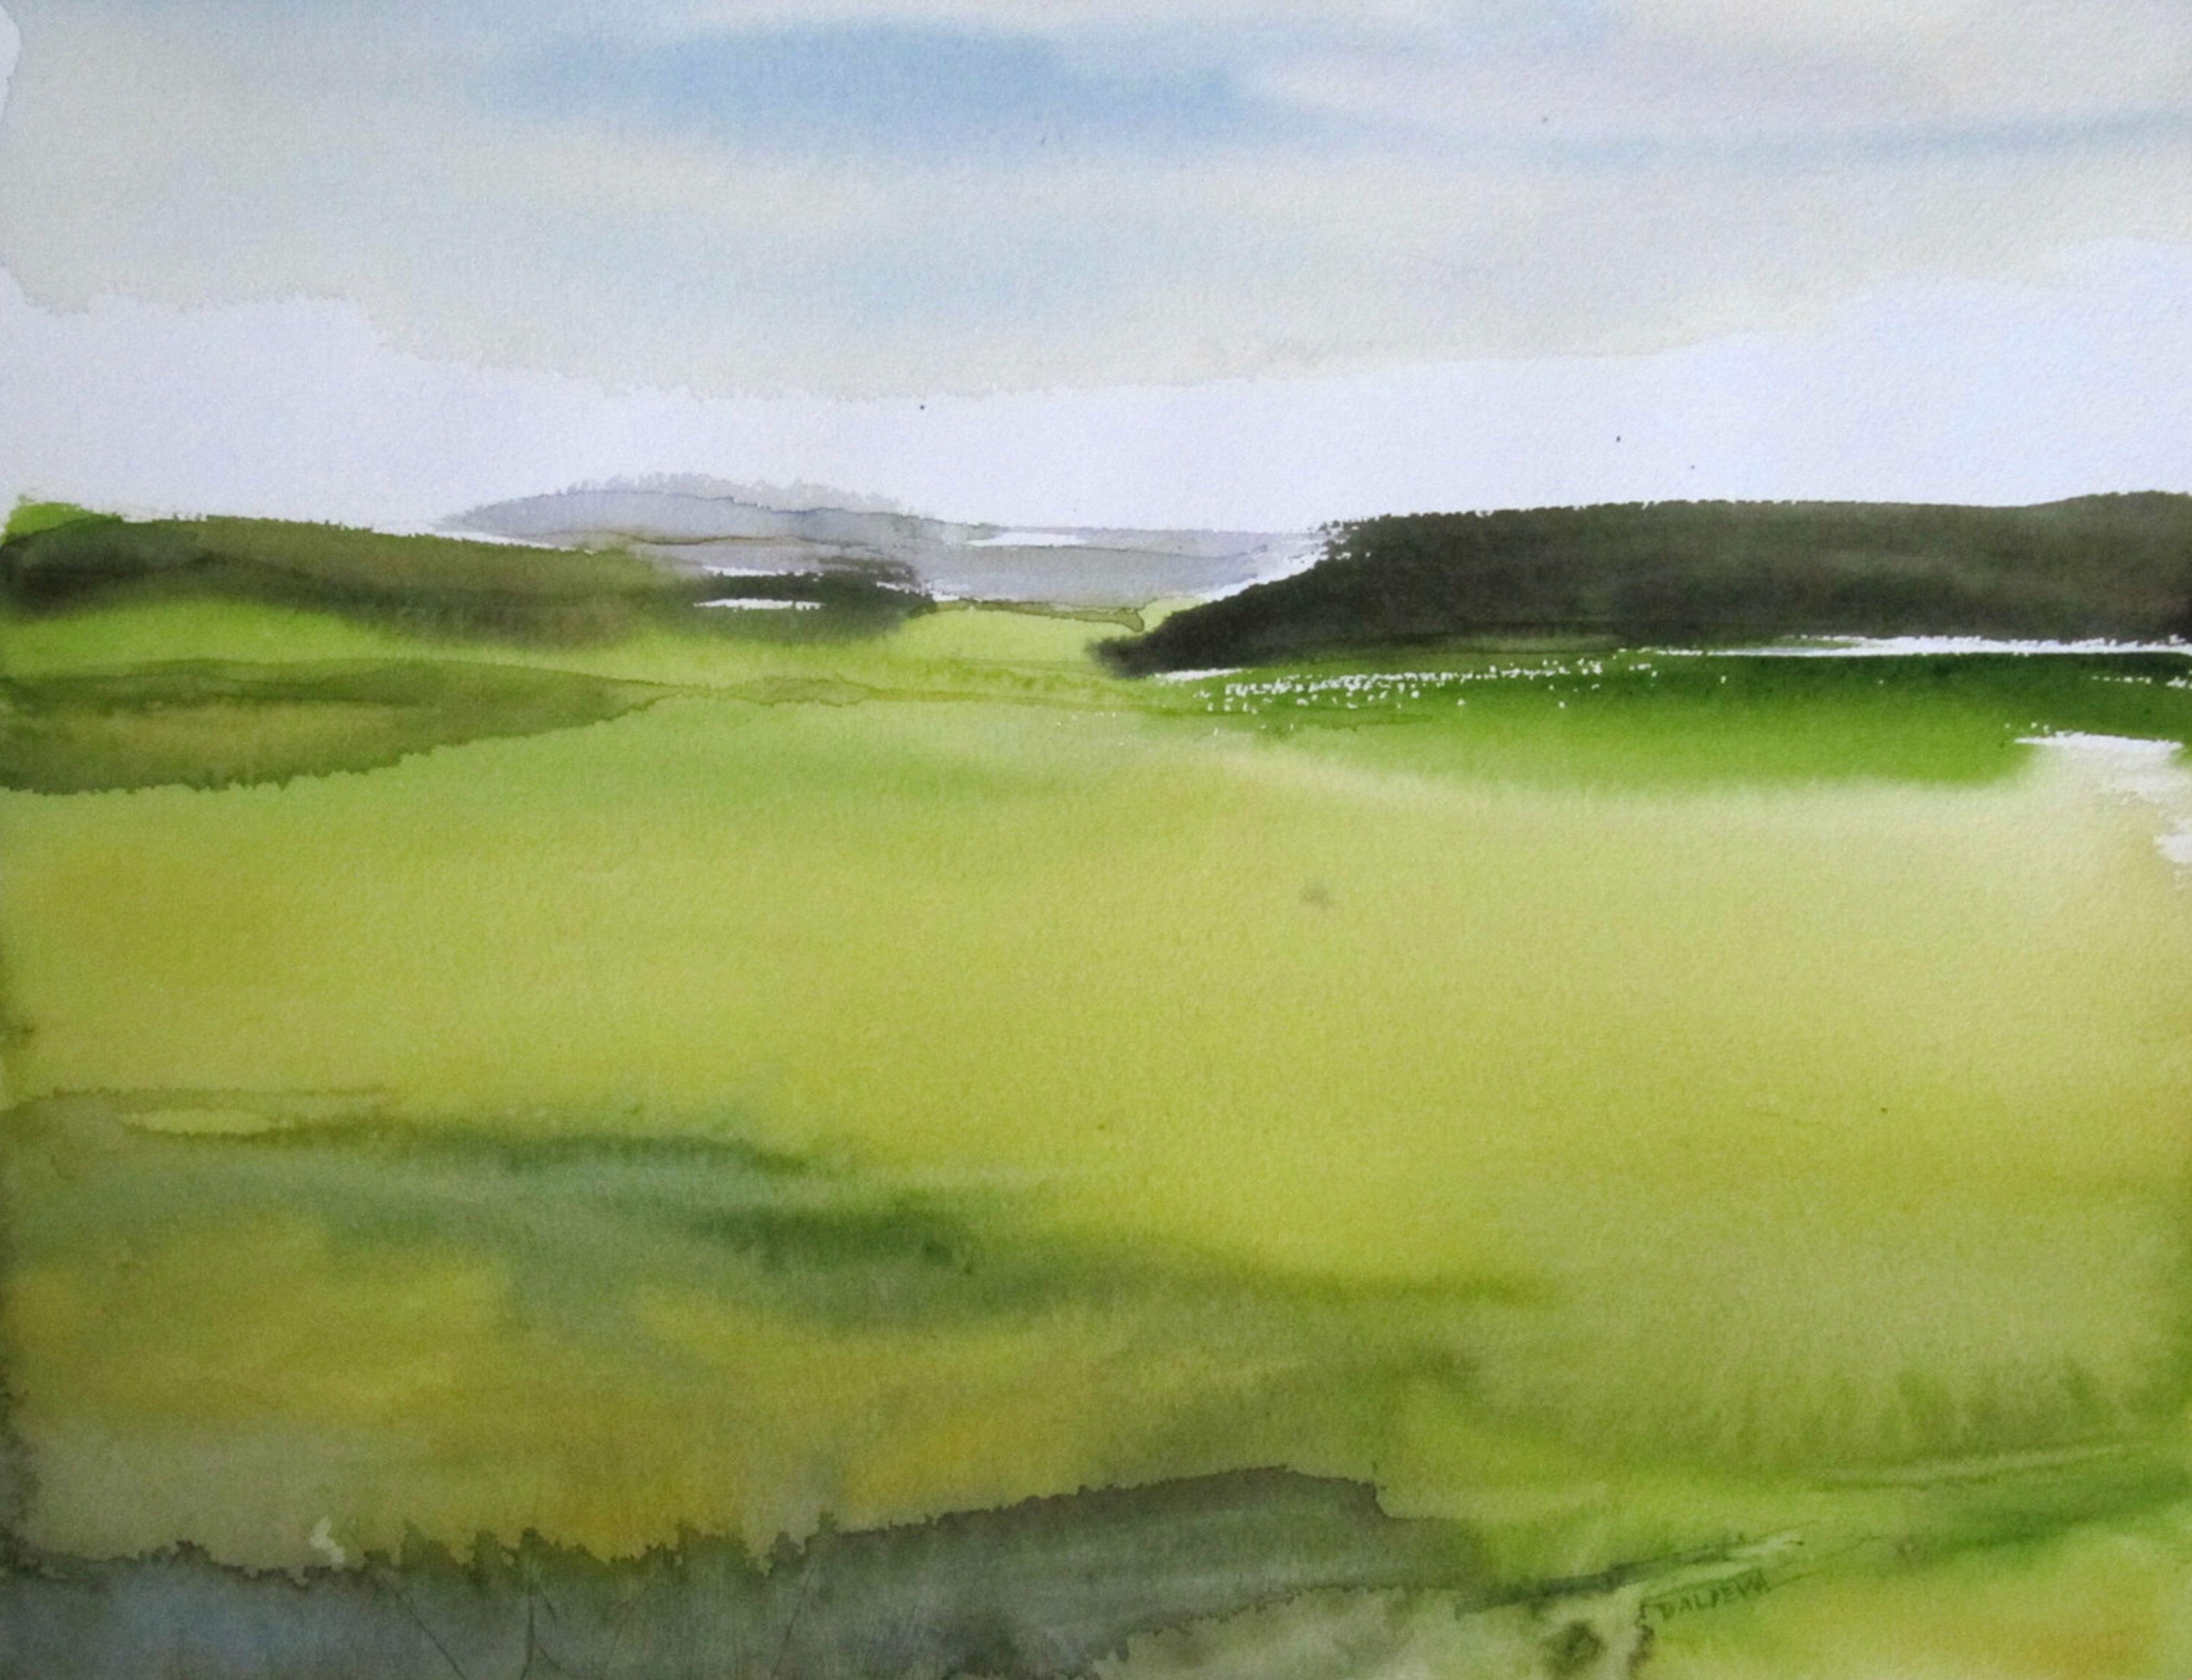 Sylvia Baldeva的 "Plaine "展示了一幅水彩画风景，平原，天空，颜色以绿色为主。